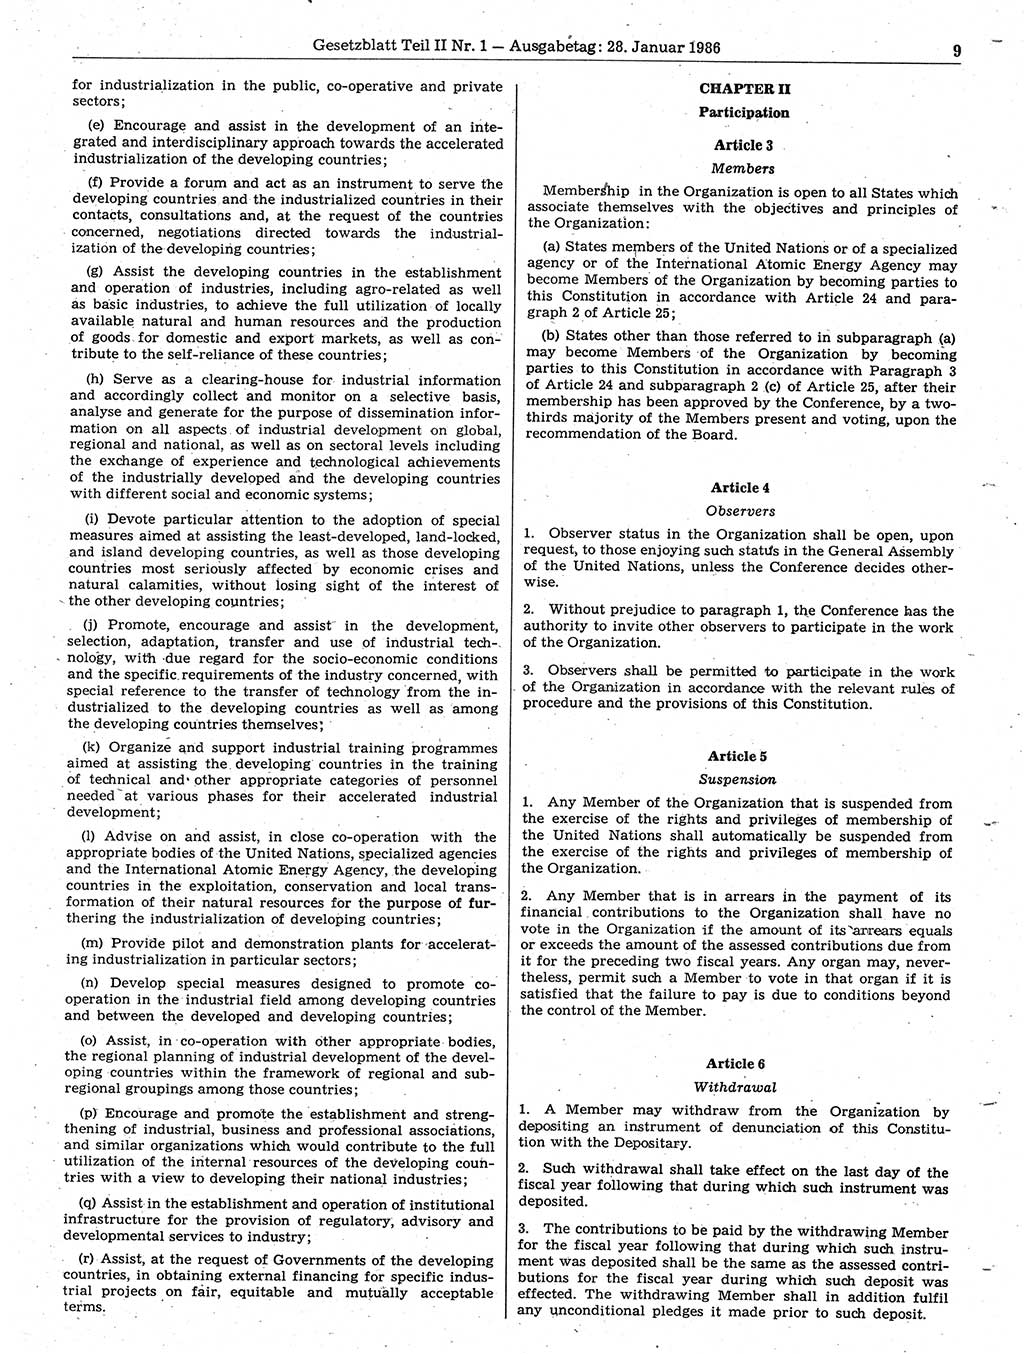 Gesetzblatt (GBl.) der Deutschen Demokratischen Republik (DDR) Teil ⅠⅠ 1986, Seite 9 (GBl. DDR ⅠⅠ 1986, S. 9)